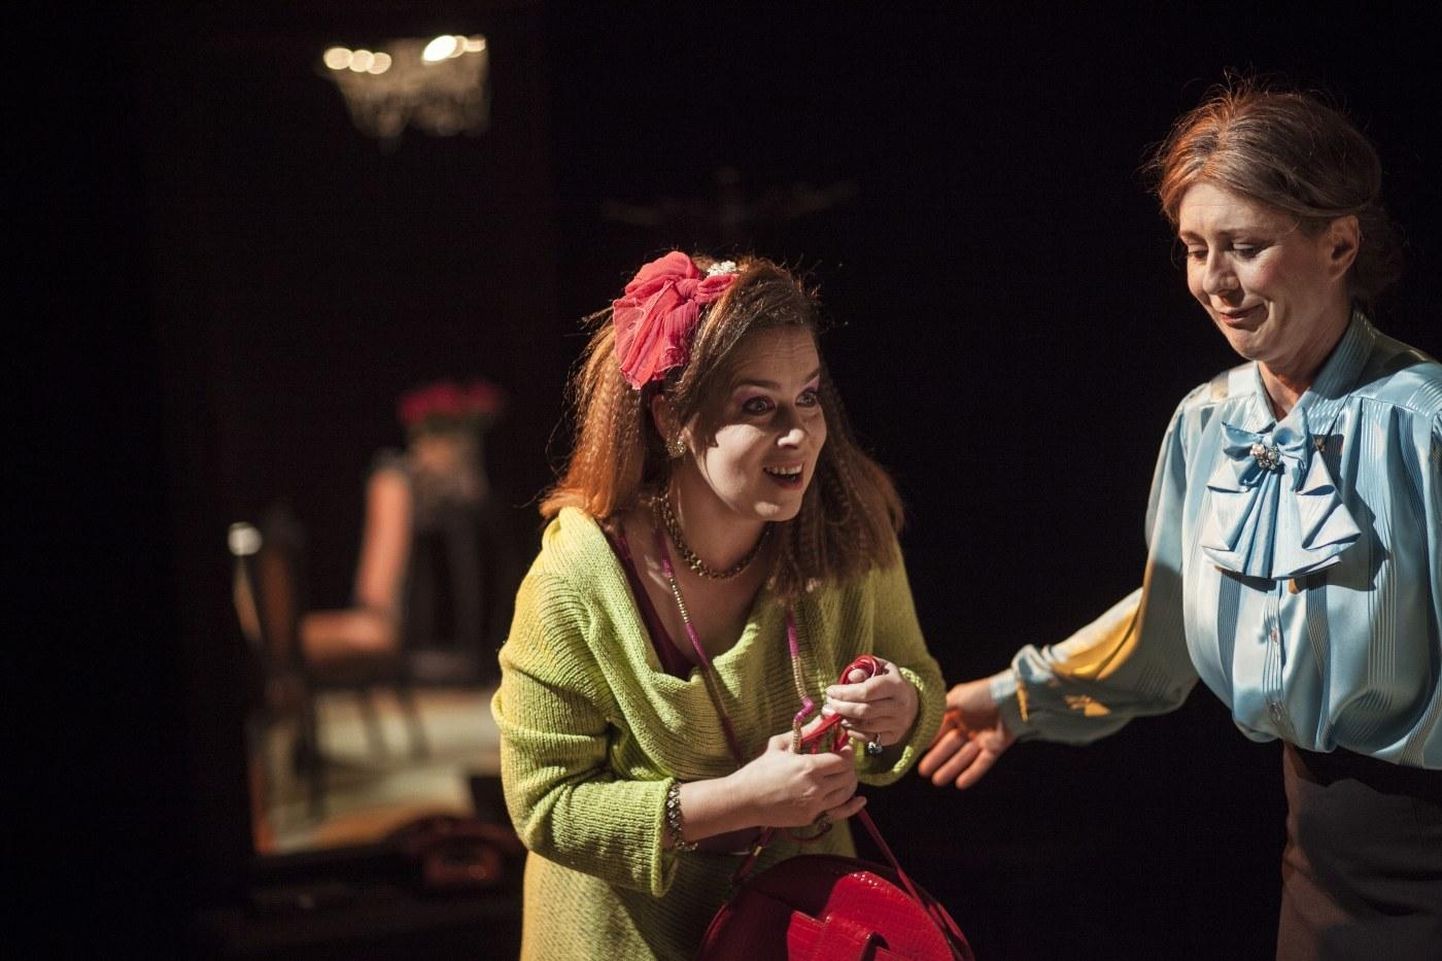 Rakvere teatri hõivatuim naisnäitleja aastal 2018 Anneli Rahkema lavastuses "Kuni ta suri", partneriks Ülle Lichtfeldt, kellel on kandev roll aasta mängituimas lavastuses "Lendas üle käopesa".